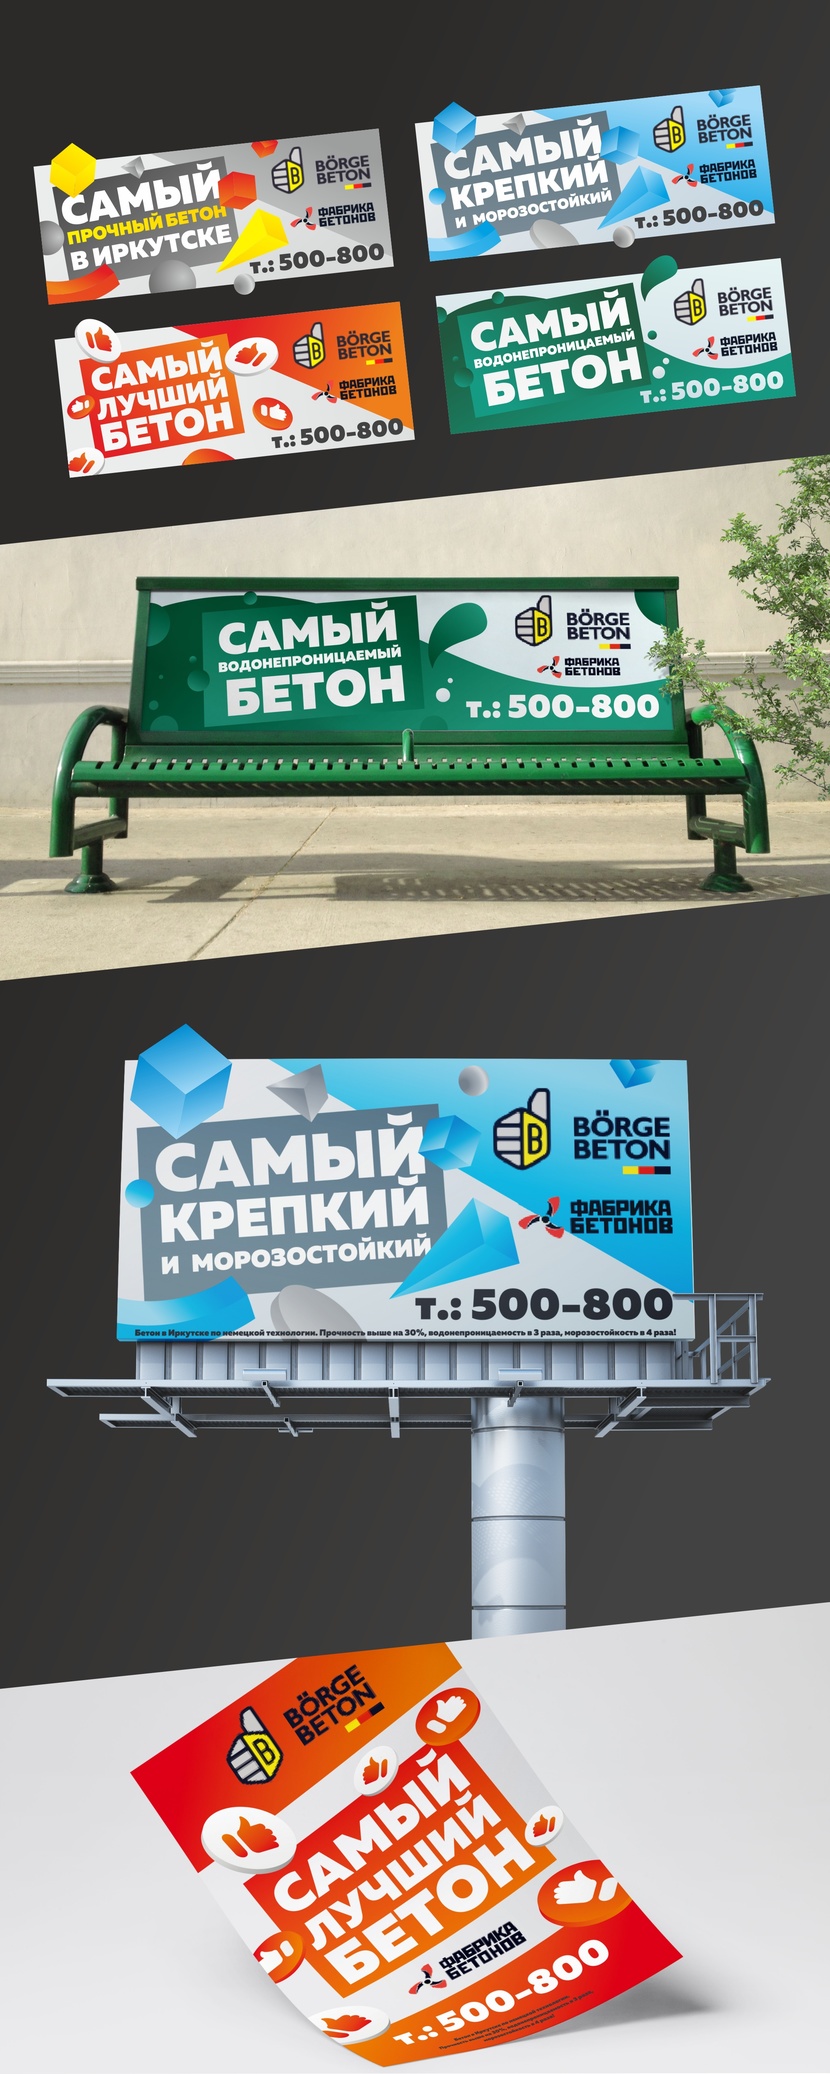 Разработать креативный дизайн для представления бренда "Бёрге бетон"  -  автор Pavel Belozerov